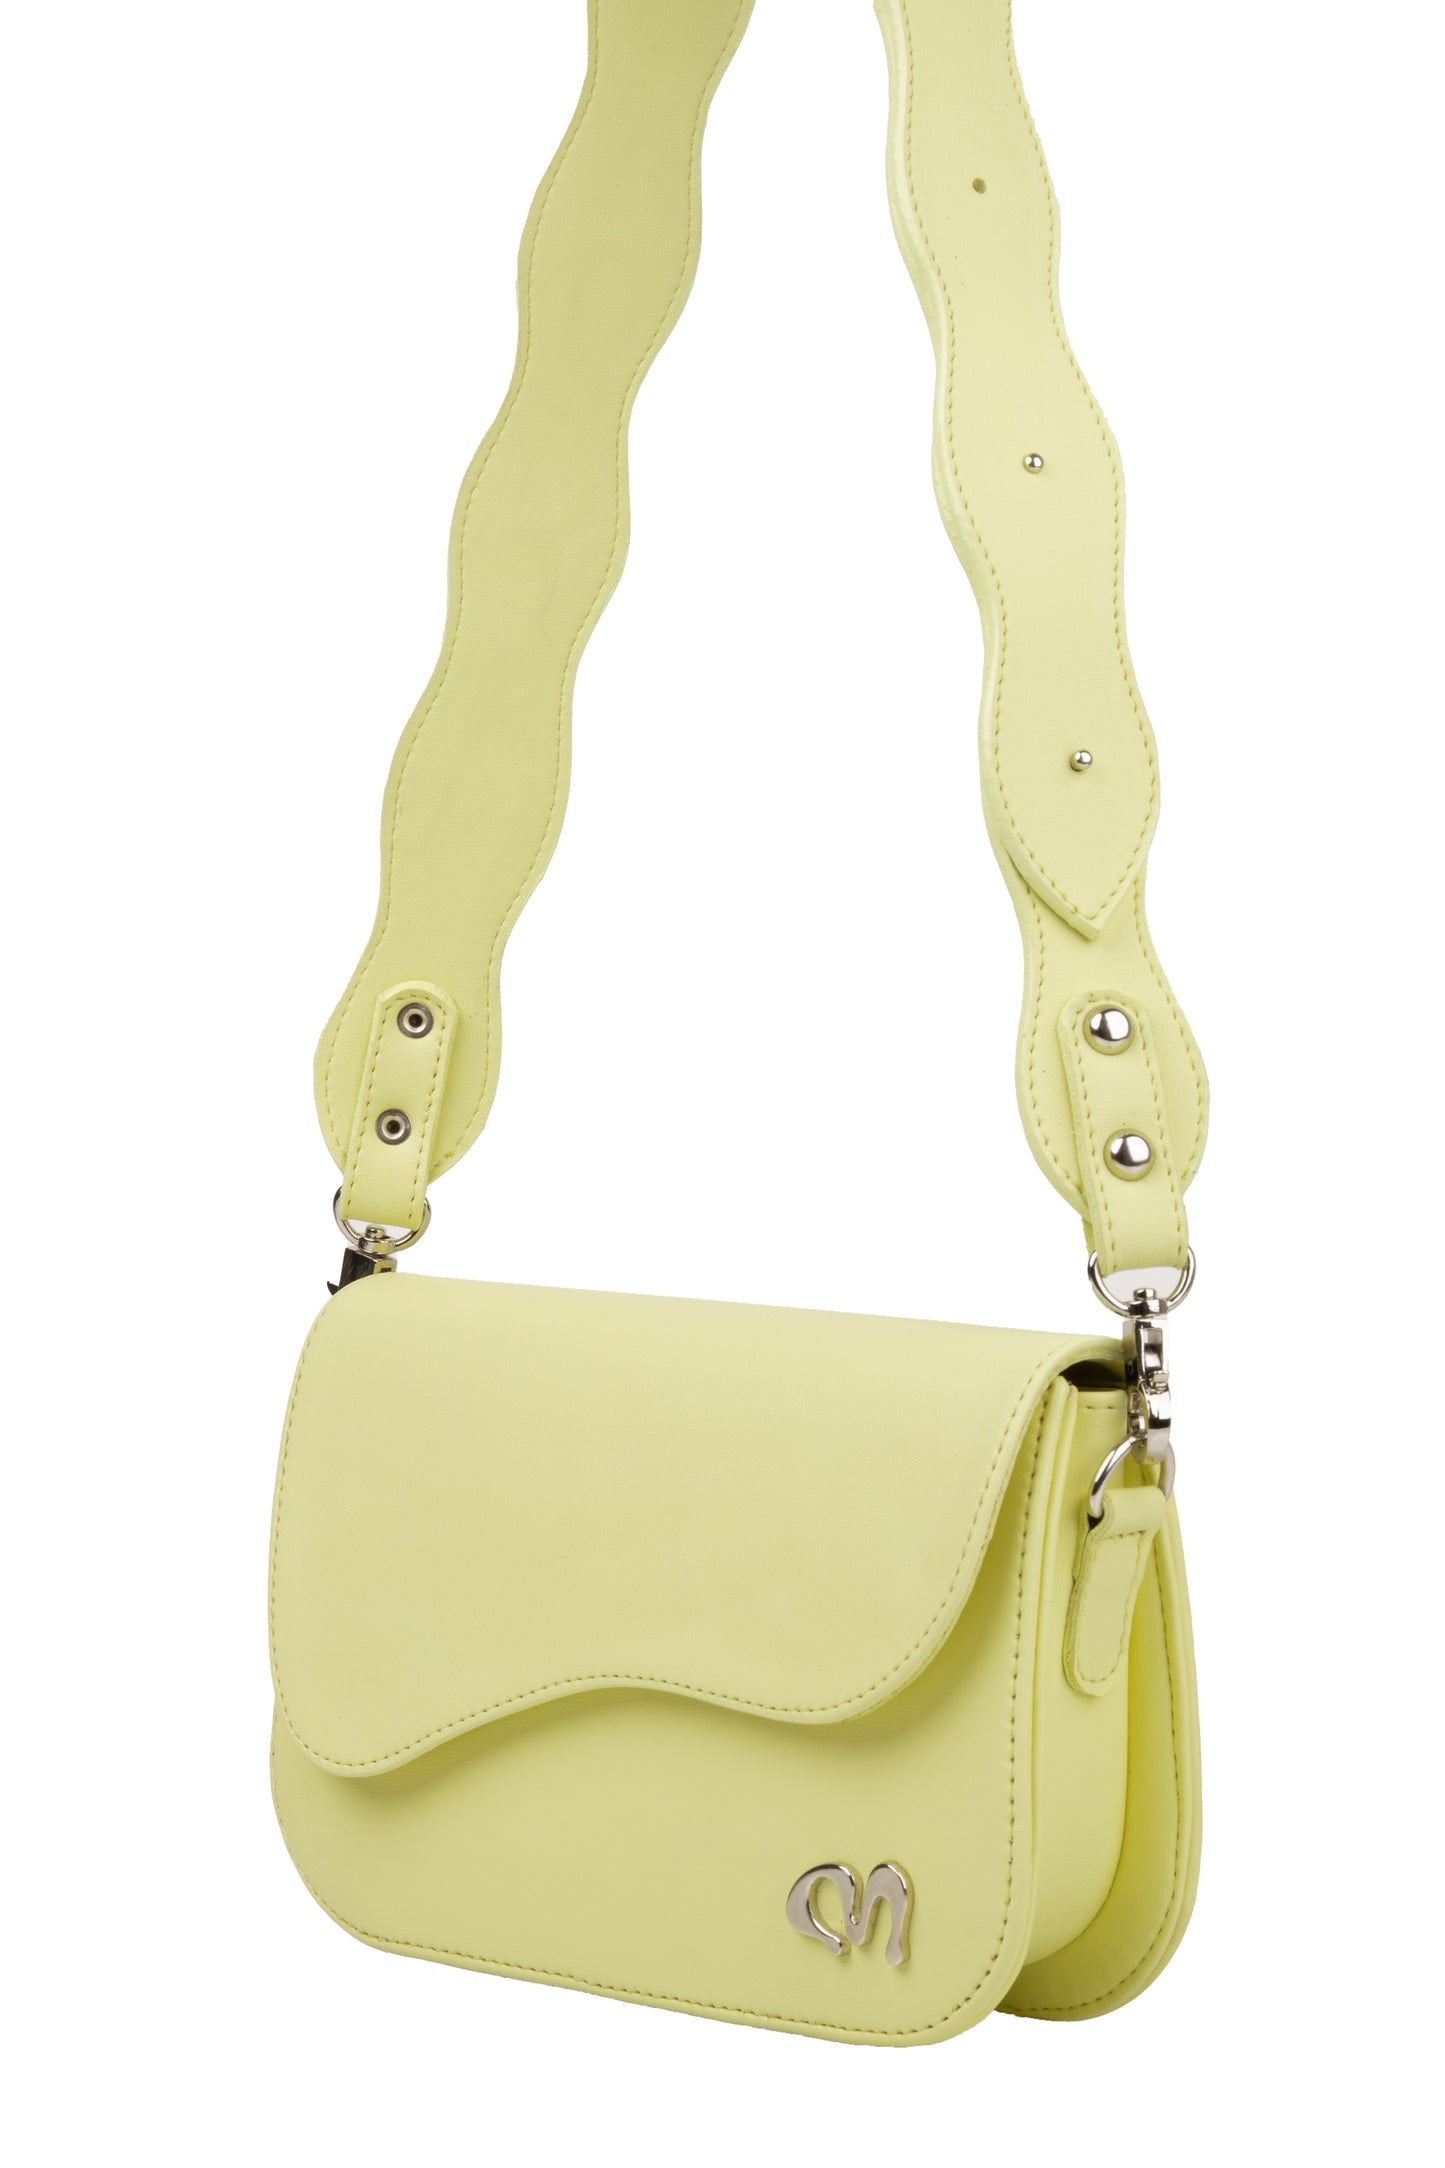 Lemon Yellow Shell Bag